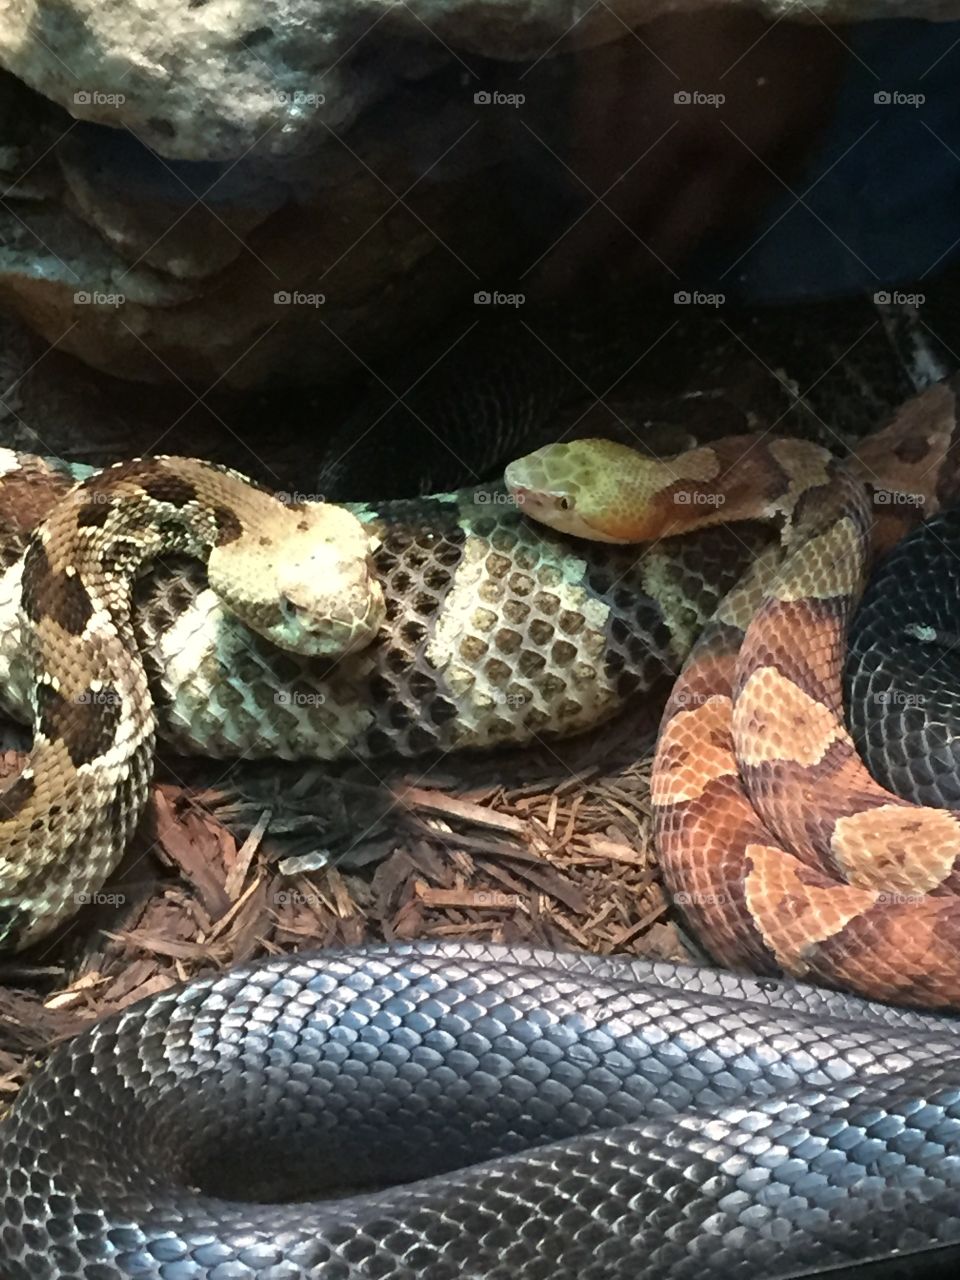 Rattlesnake vs Copperhead 